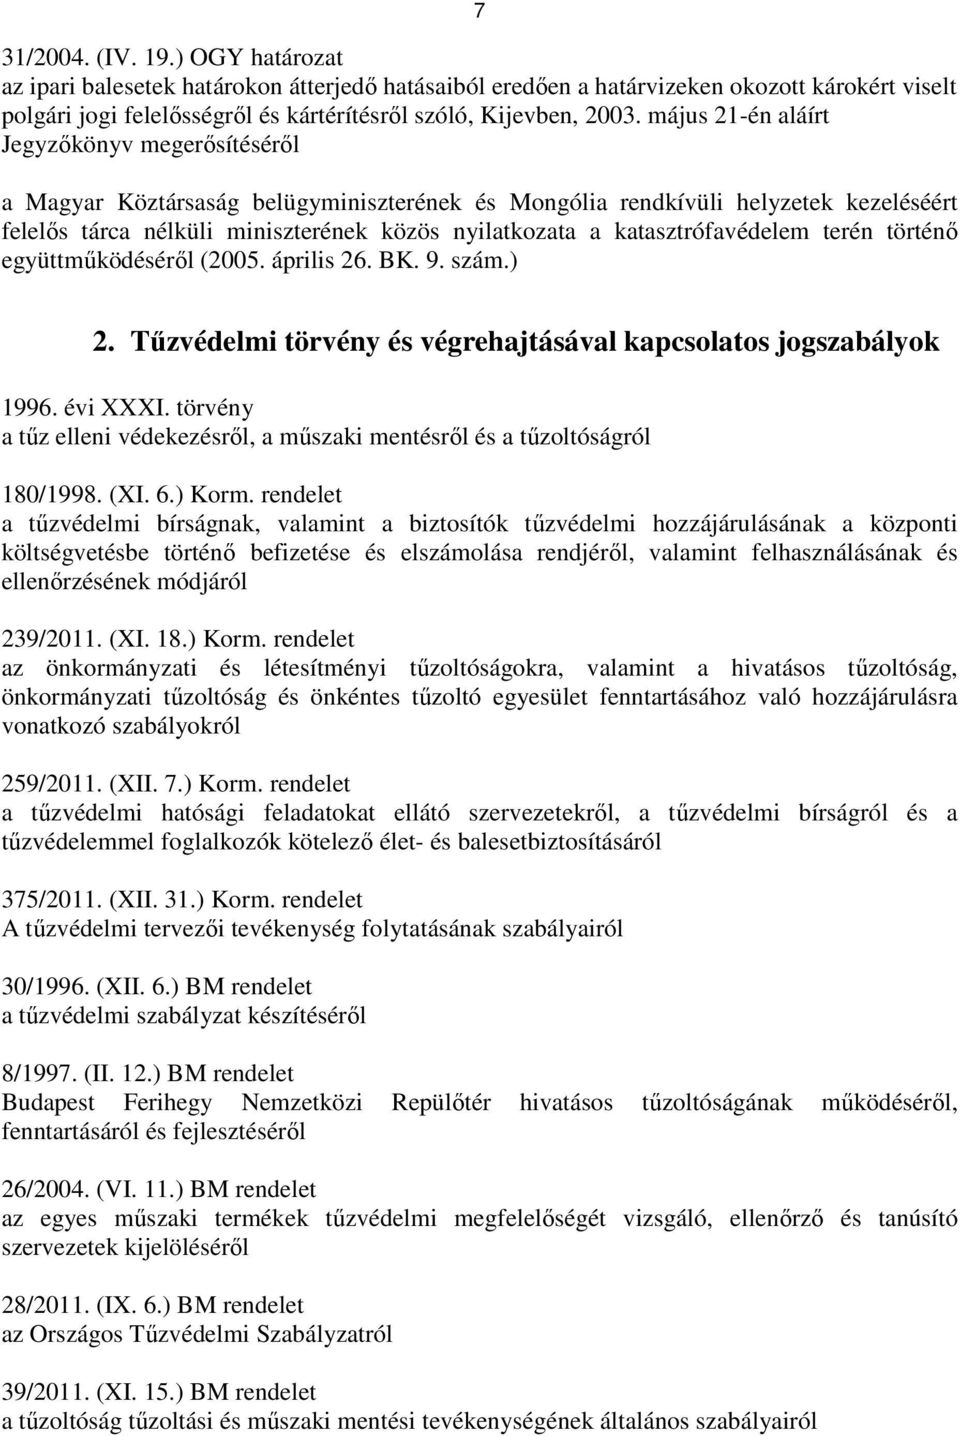 katasztrófavédelem terén történı együttmőködésérıl (2005. április 26. BK. 9. szám.) 2. Tőzvédelmi törvény és végrehajtásával kapcsolatos jogszabályok 1996. évi XXXI.